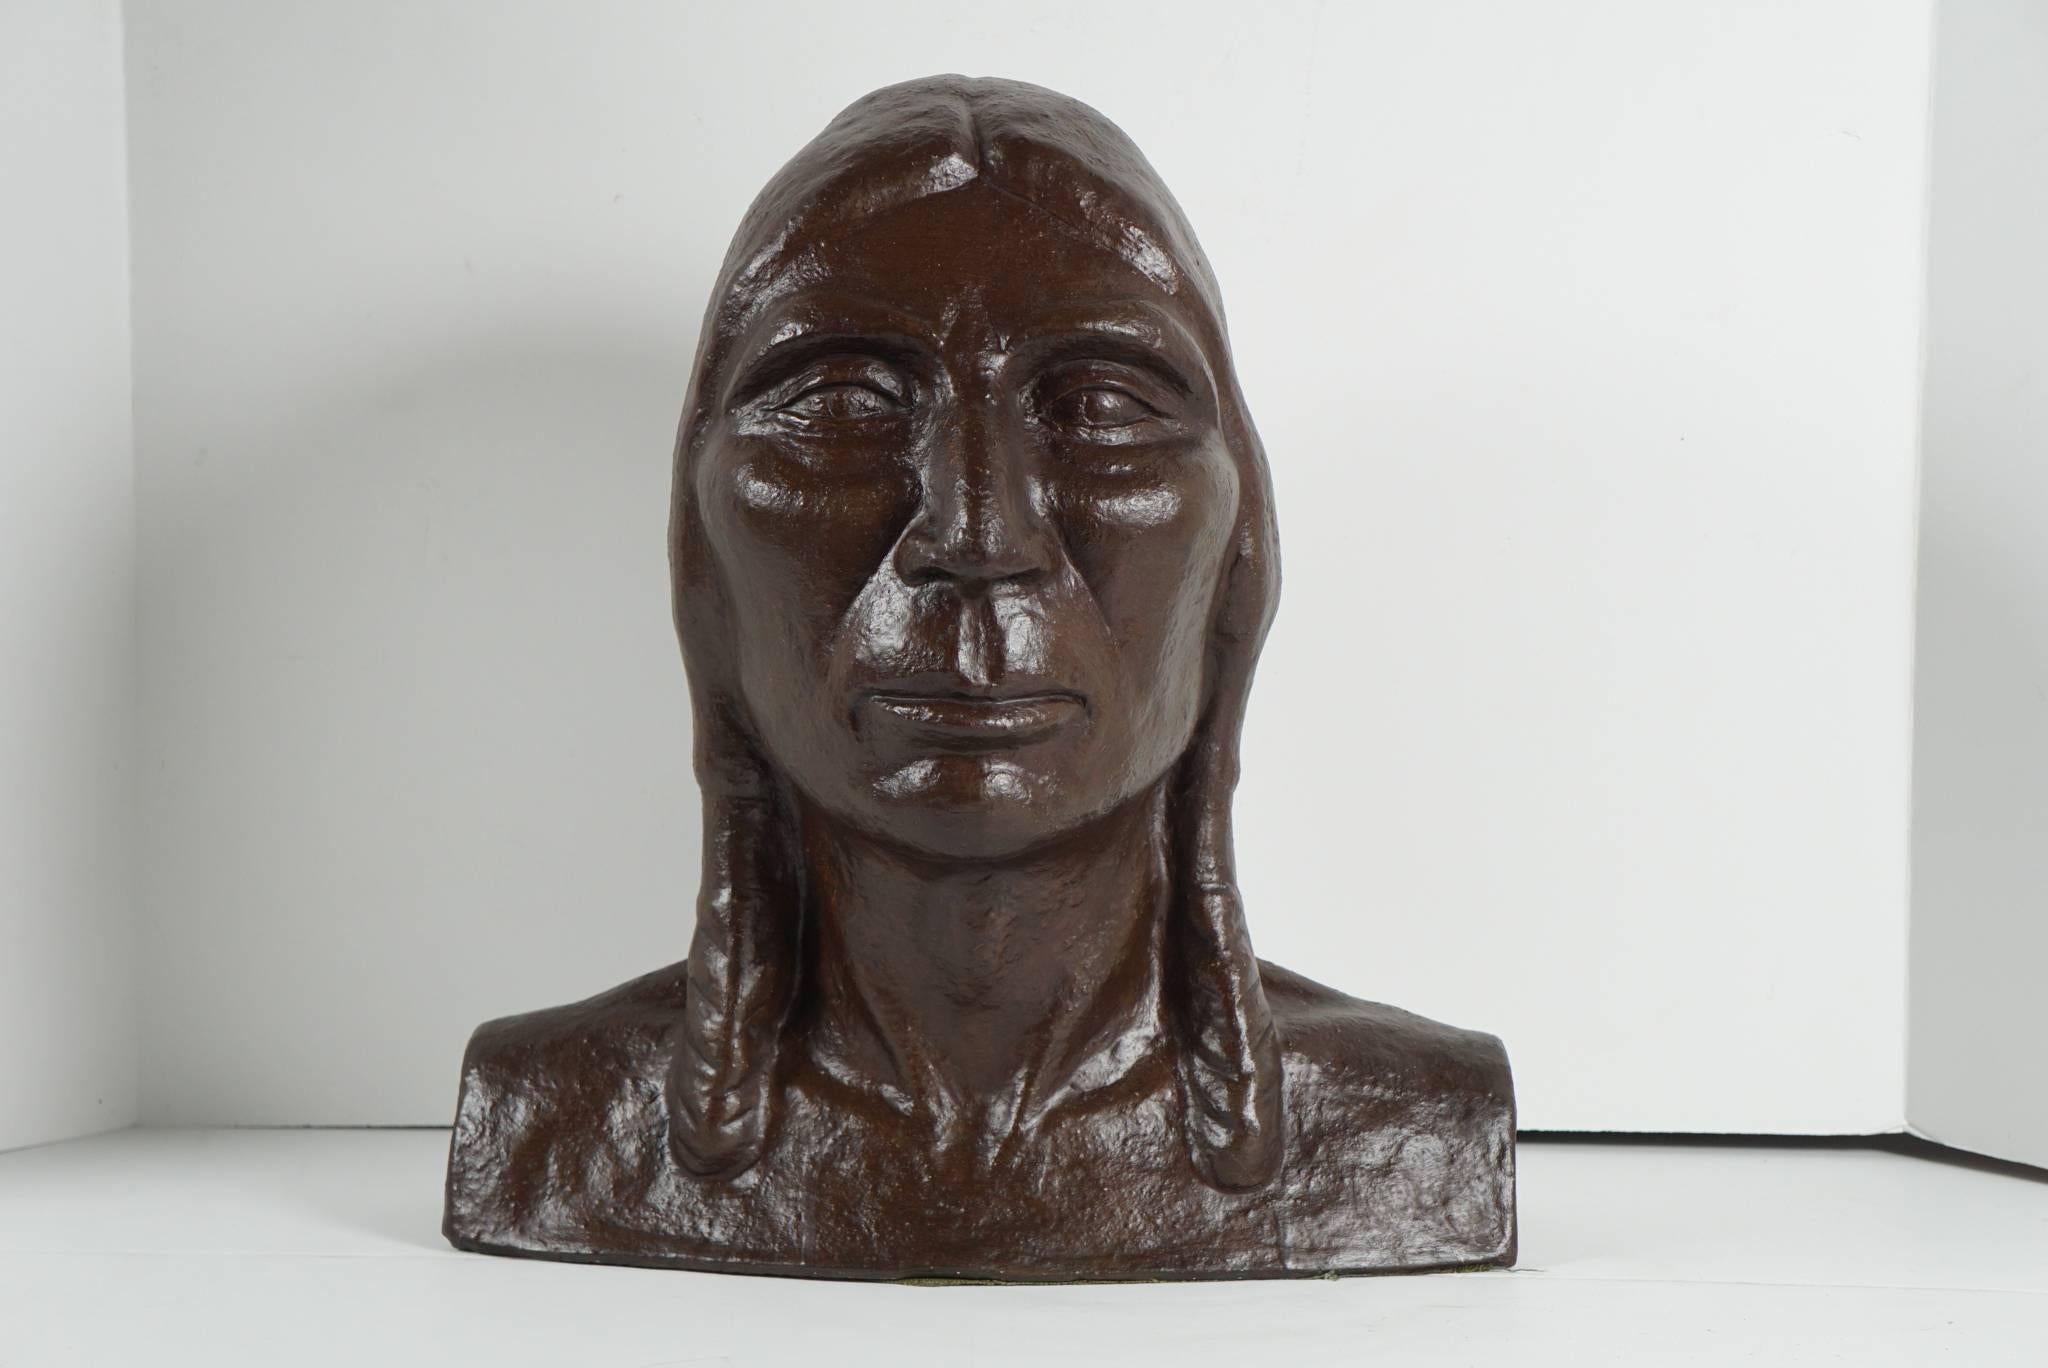 Dieses um 1915 geschaffene Werk aus bronziertem Gips gehört zu der Kunstschule, die sich mit der untergehenden Kultur der amerikanischen Ureinwohner beschäftigt, wie sie von europäisch geschulten Malern und Bildhauern im amerikanischen Südwesten